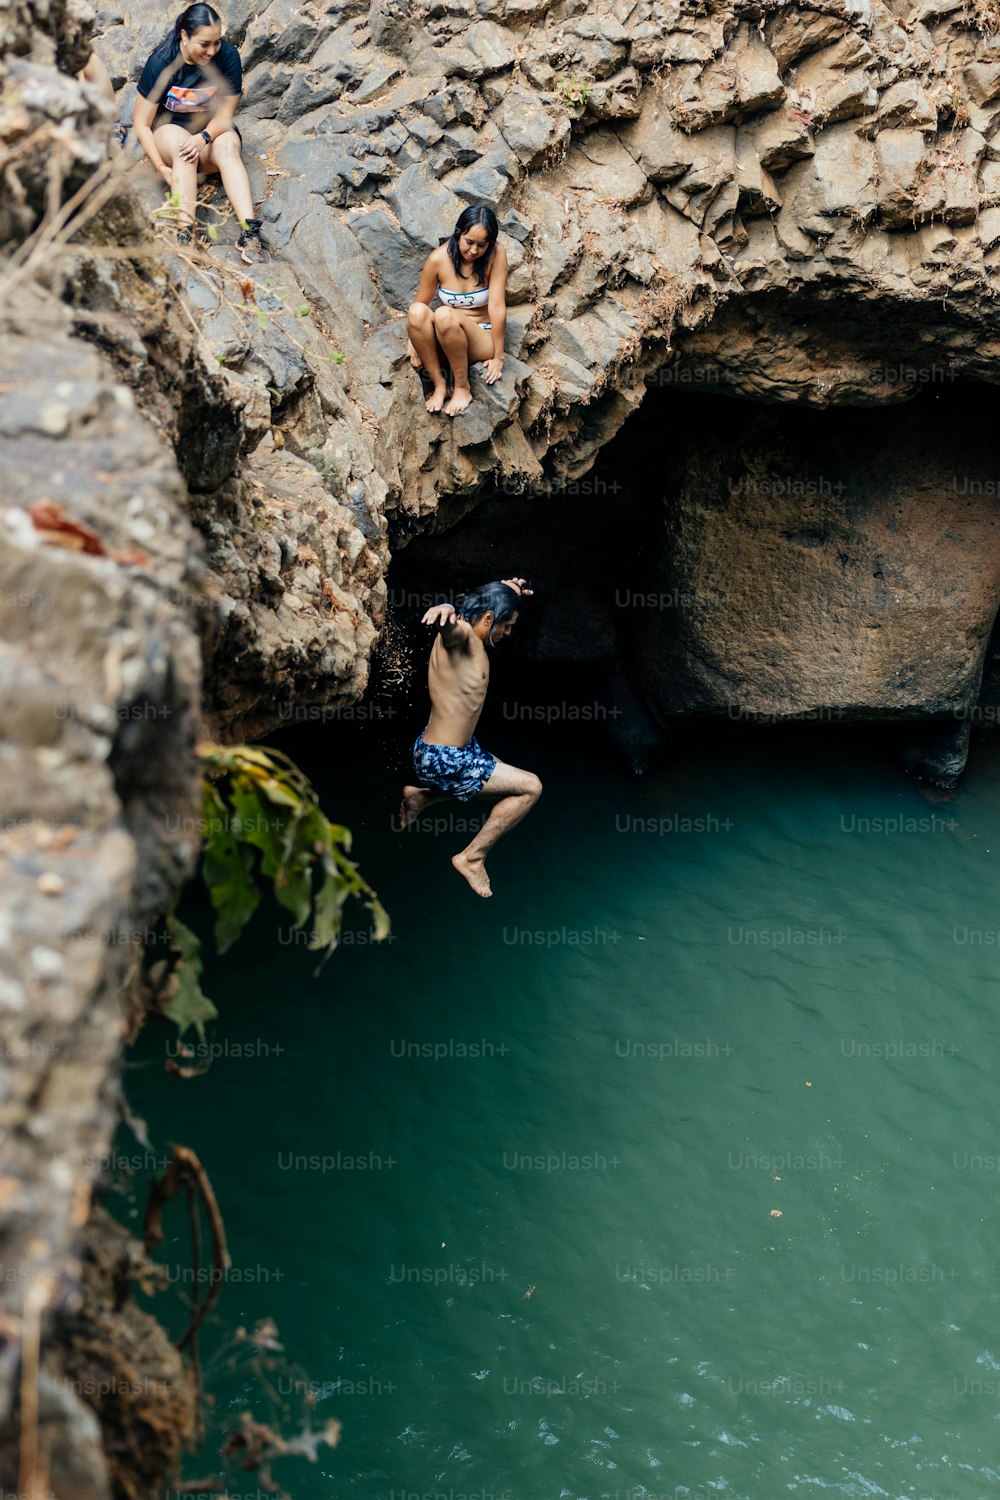 Un gruppo di persone che saltano giù da una scogliera in uno specchio d'acqua